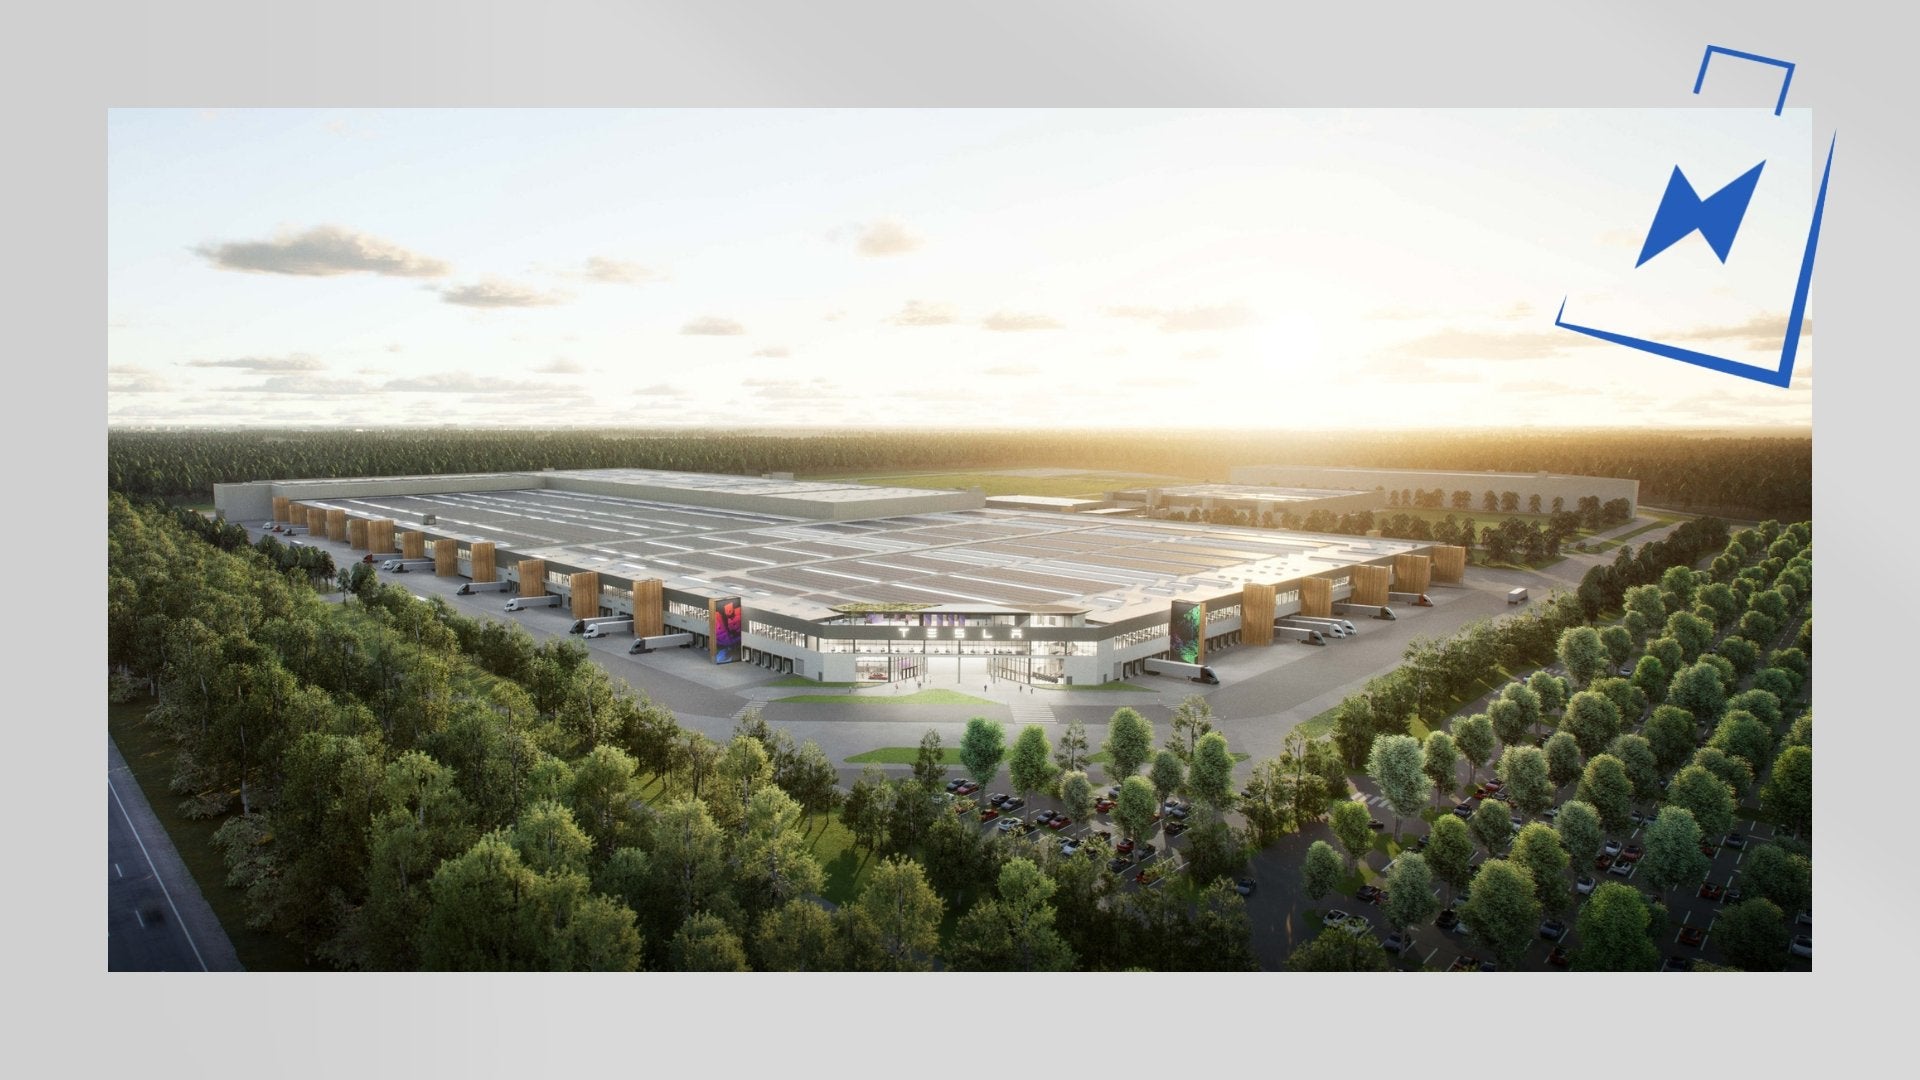 Tesla erweitert das Gelände der Gigafactory Berlin und plant 100 Hektar zusätzlich! - Shop4Tesla